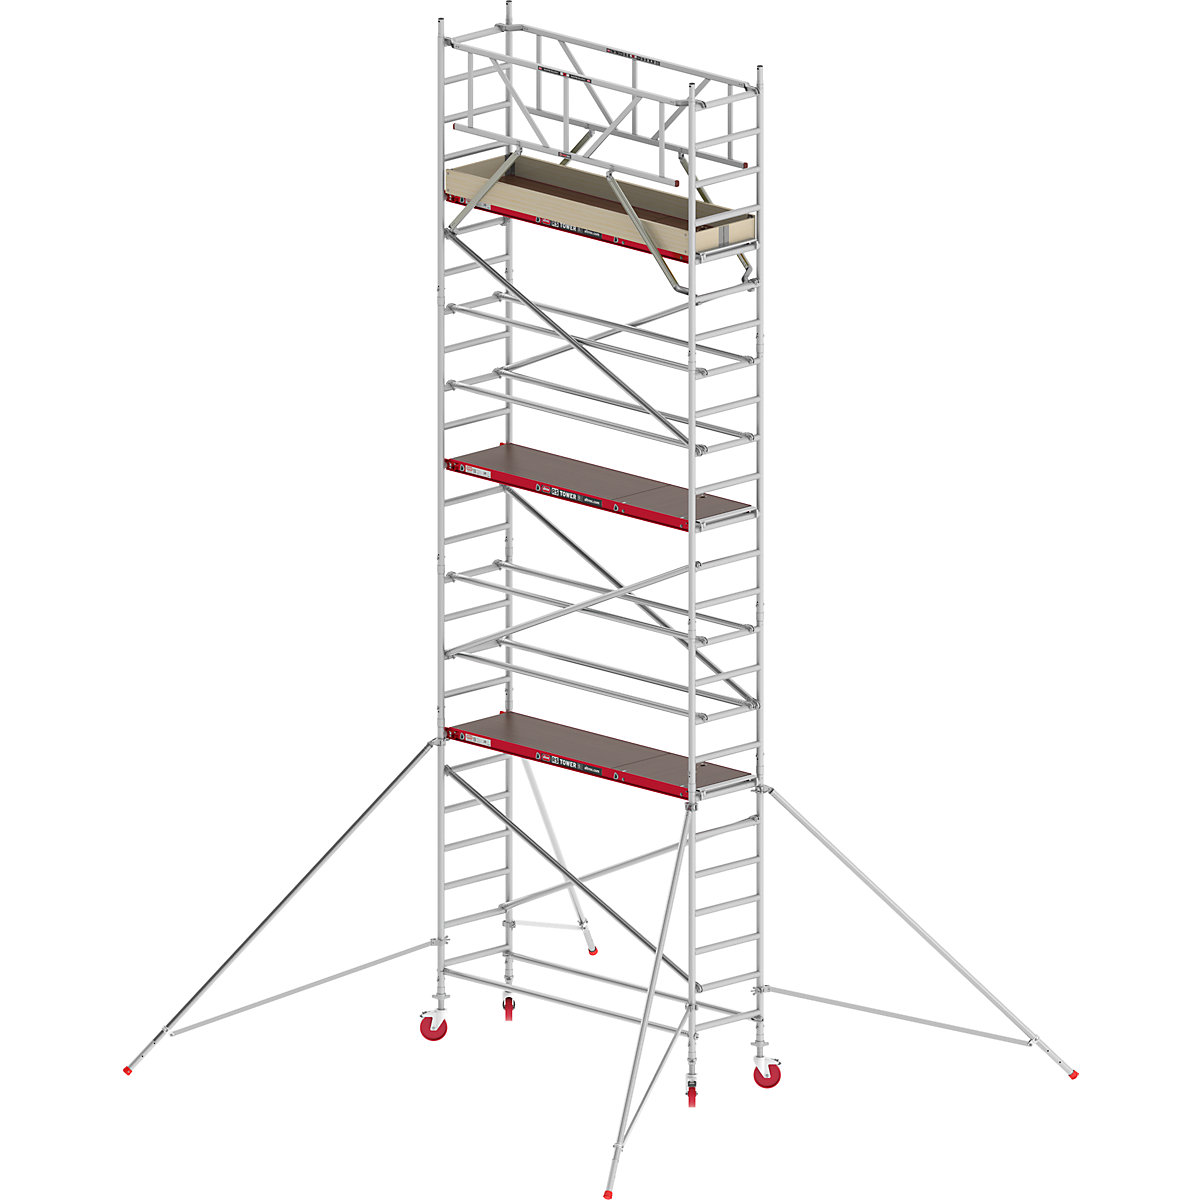 Trabattello mobile RS TOWER 41 stretto – Altrex, piattaforma in legno, lunghezza 1,85 m, altezza di lavoro 8,20 m-1